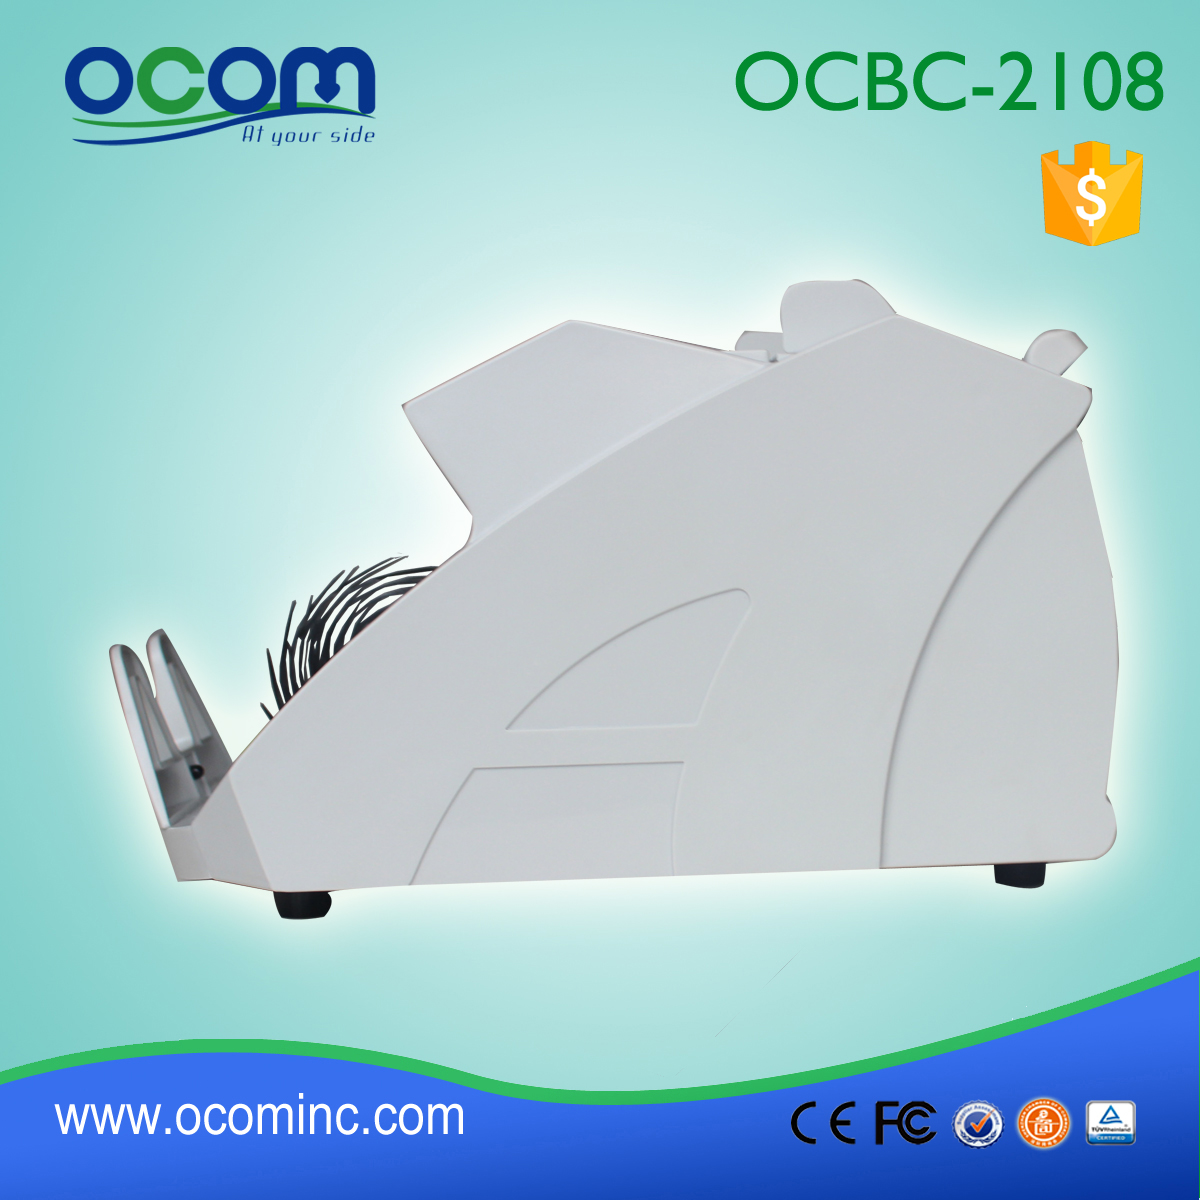 (OCBC-2108) - OCOM сделано в 2016 году новейший счетчик банкнот с УФ-мг